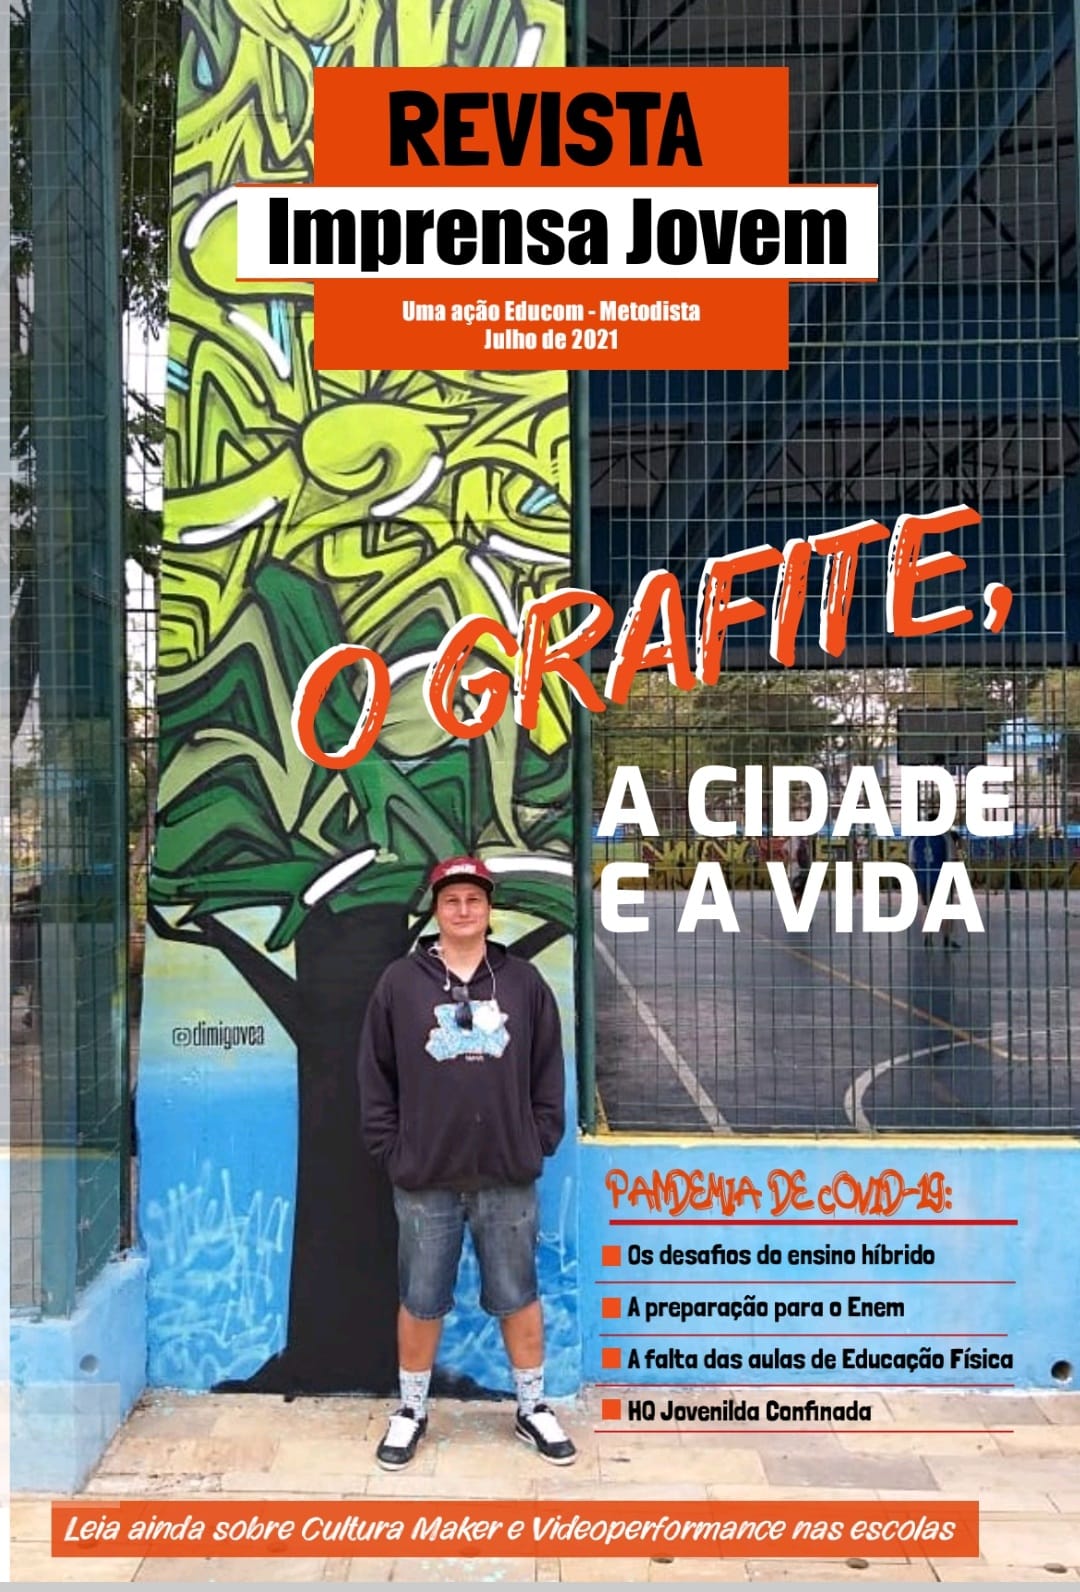 Capa da revista Imprensa Jovem com uma professora vestida com roupas esportivas pretas a frente de desenhos de graffiti